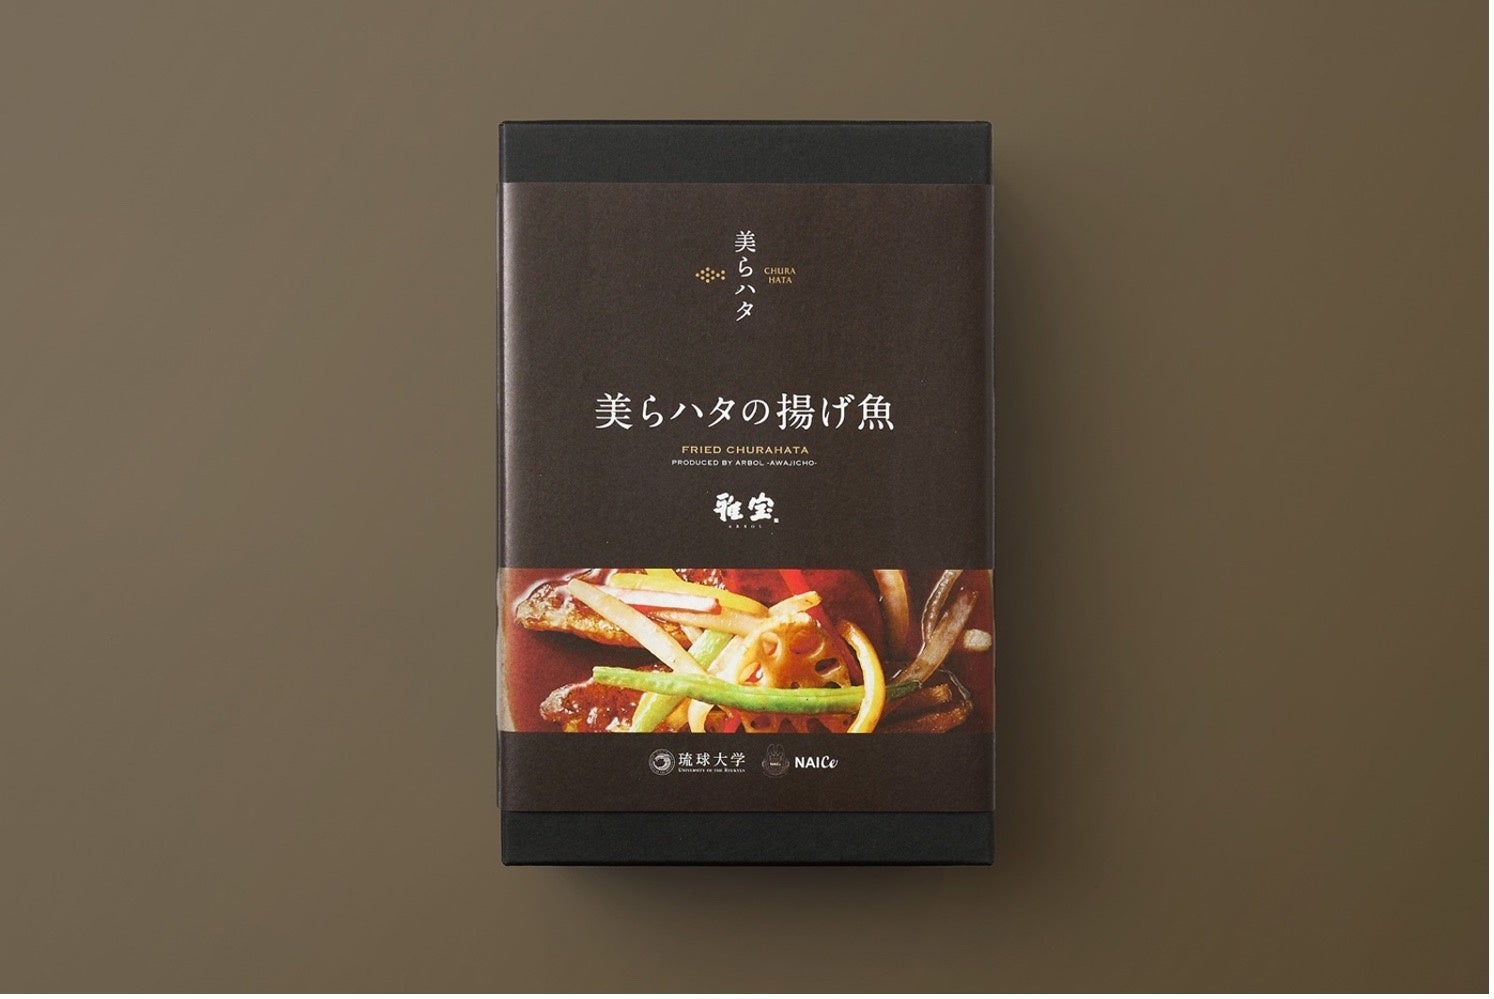 奈良の地に本格トルコレストランオープン　
「奈良県起業家支援事業」事業採択者が実現
今年度事業募集締め切り間近！7月29日郵送必着